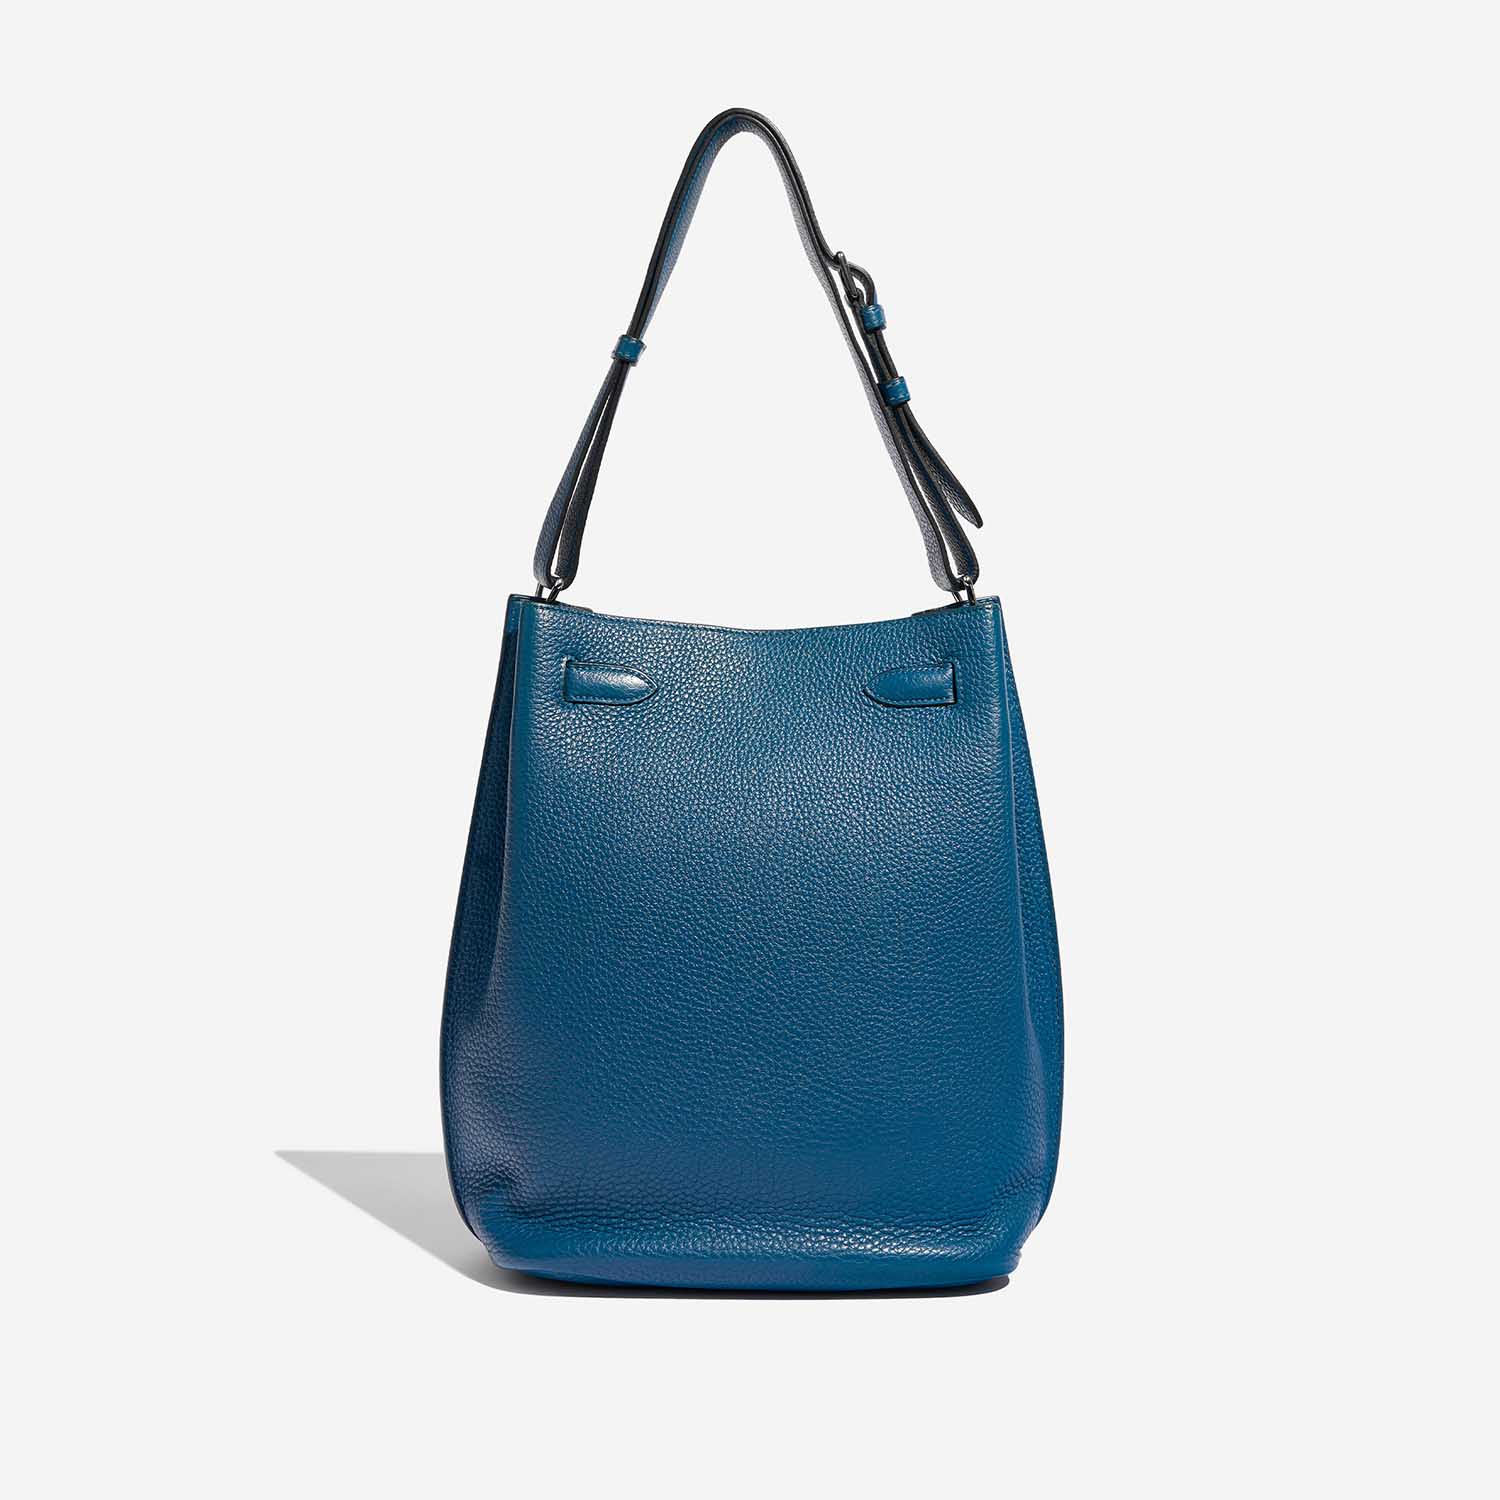 Pre-owned Hermès bag So Kelly 26 Togo Cobalt Blue Back | Sell your designer bag on Saclab.com